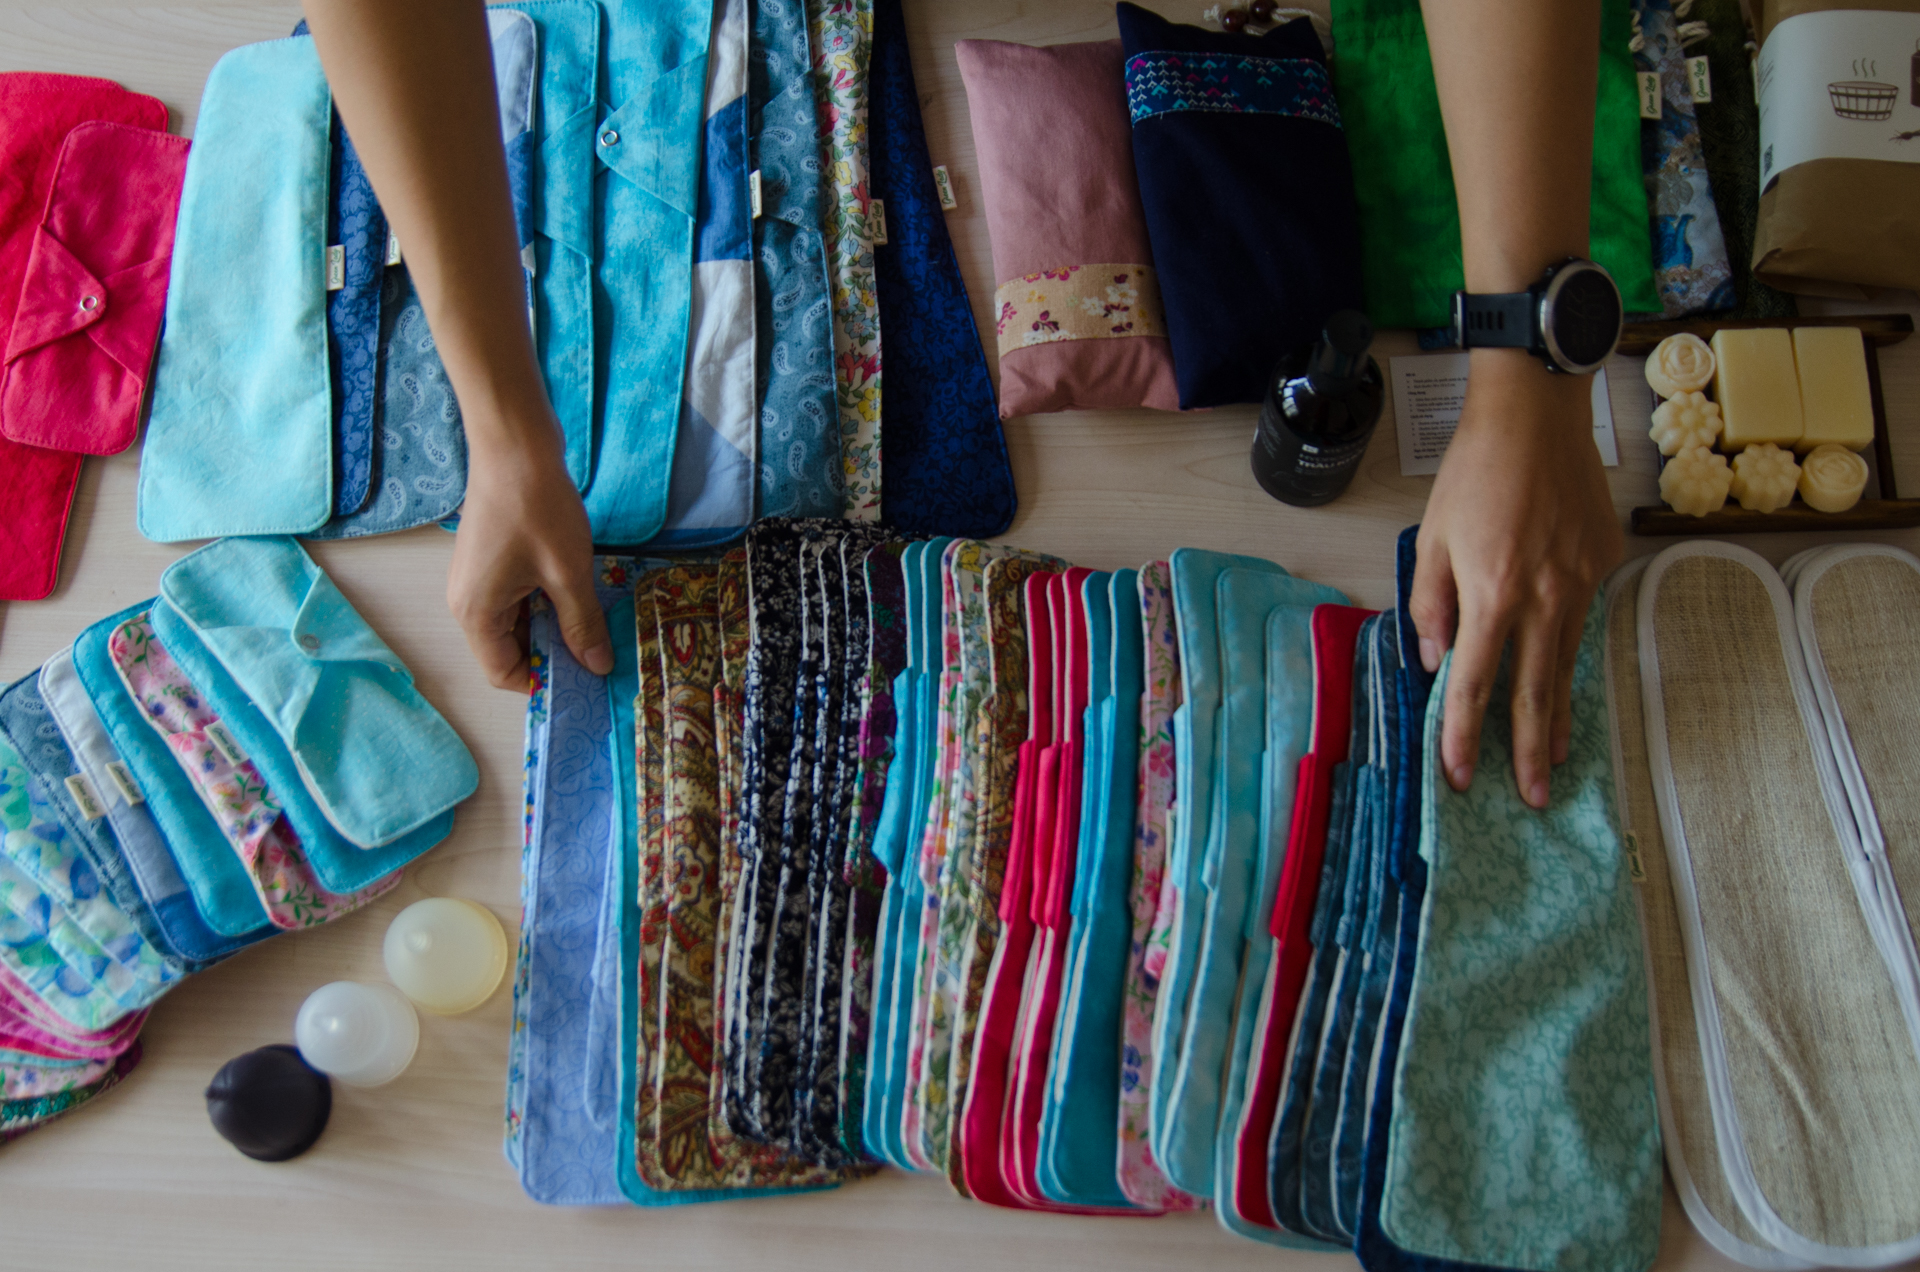 9X học Ngoại Thương khởi nghiệp bằng băng vệ sinh vải, sản phẩm khiến chị em e ngại nhưng lại có nhiều lợi ích bất ngờ - Ảnh 3.